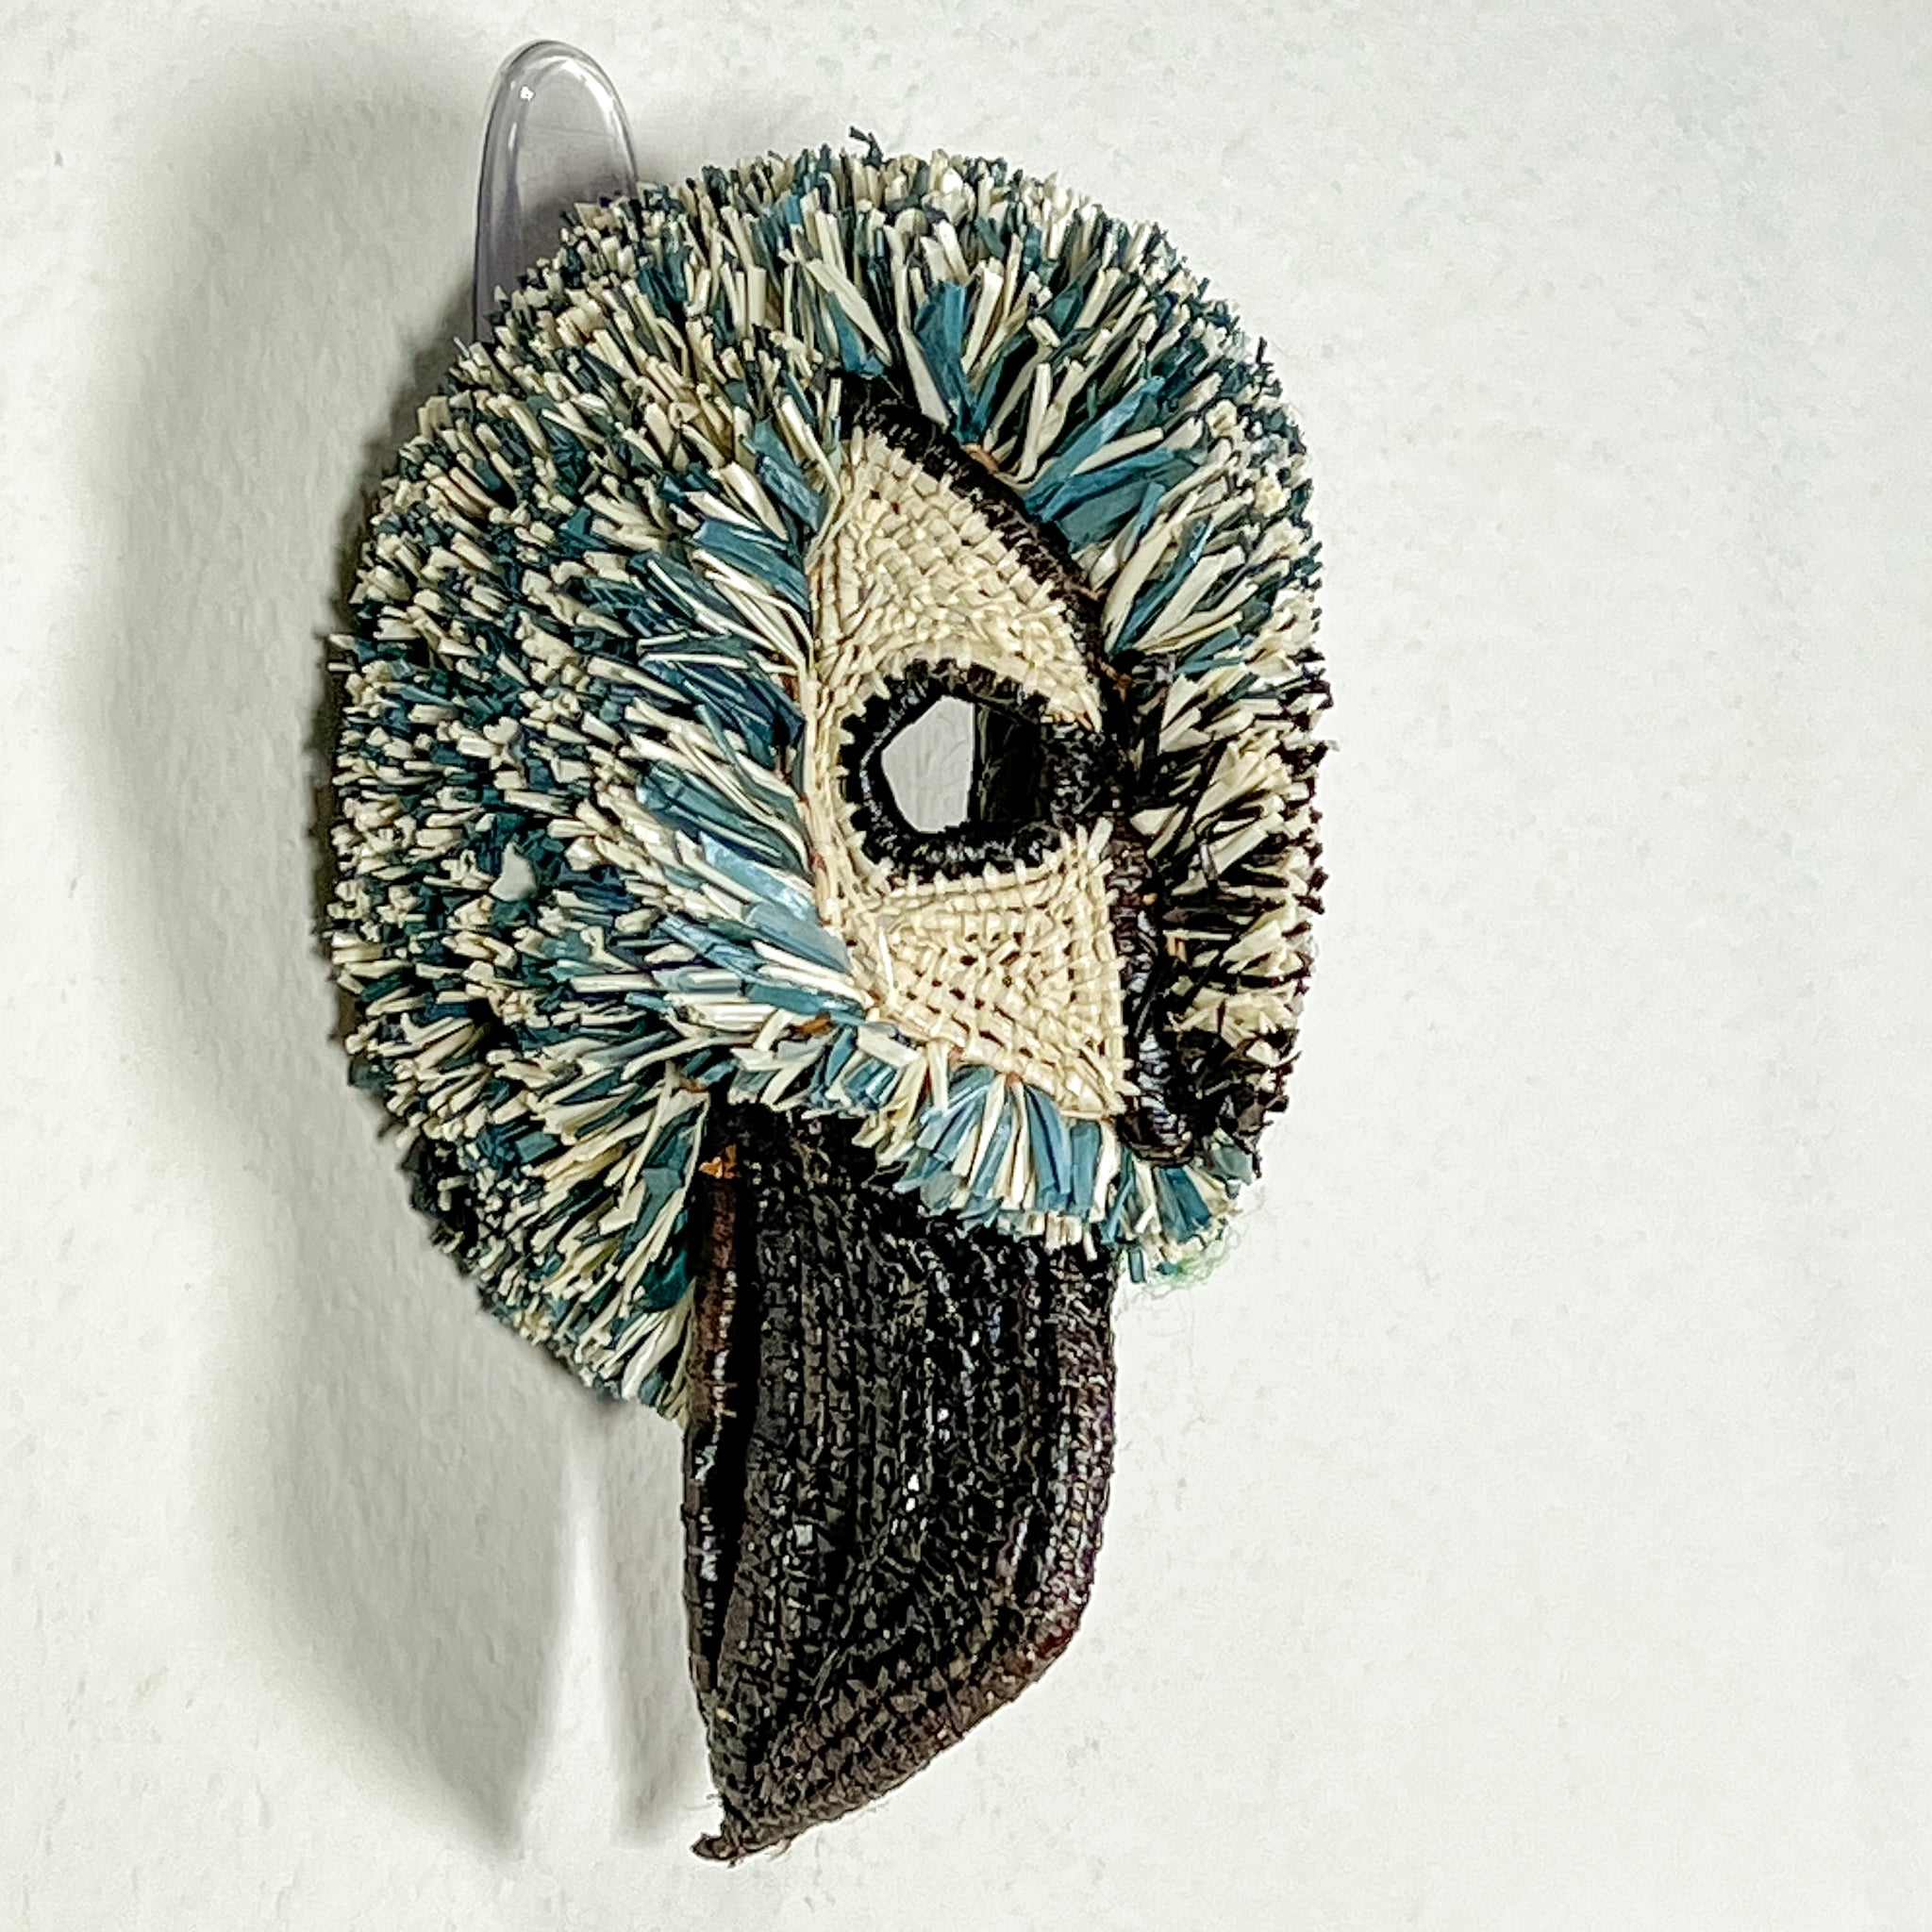 Blue-Winged Kookaburra Mask